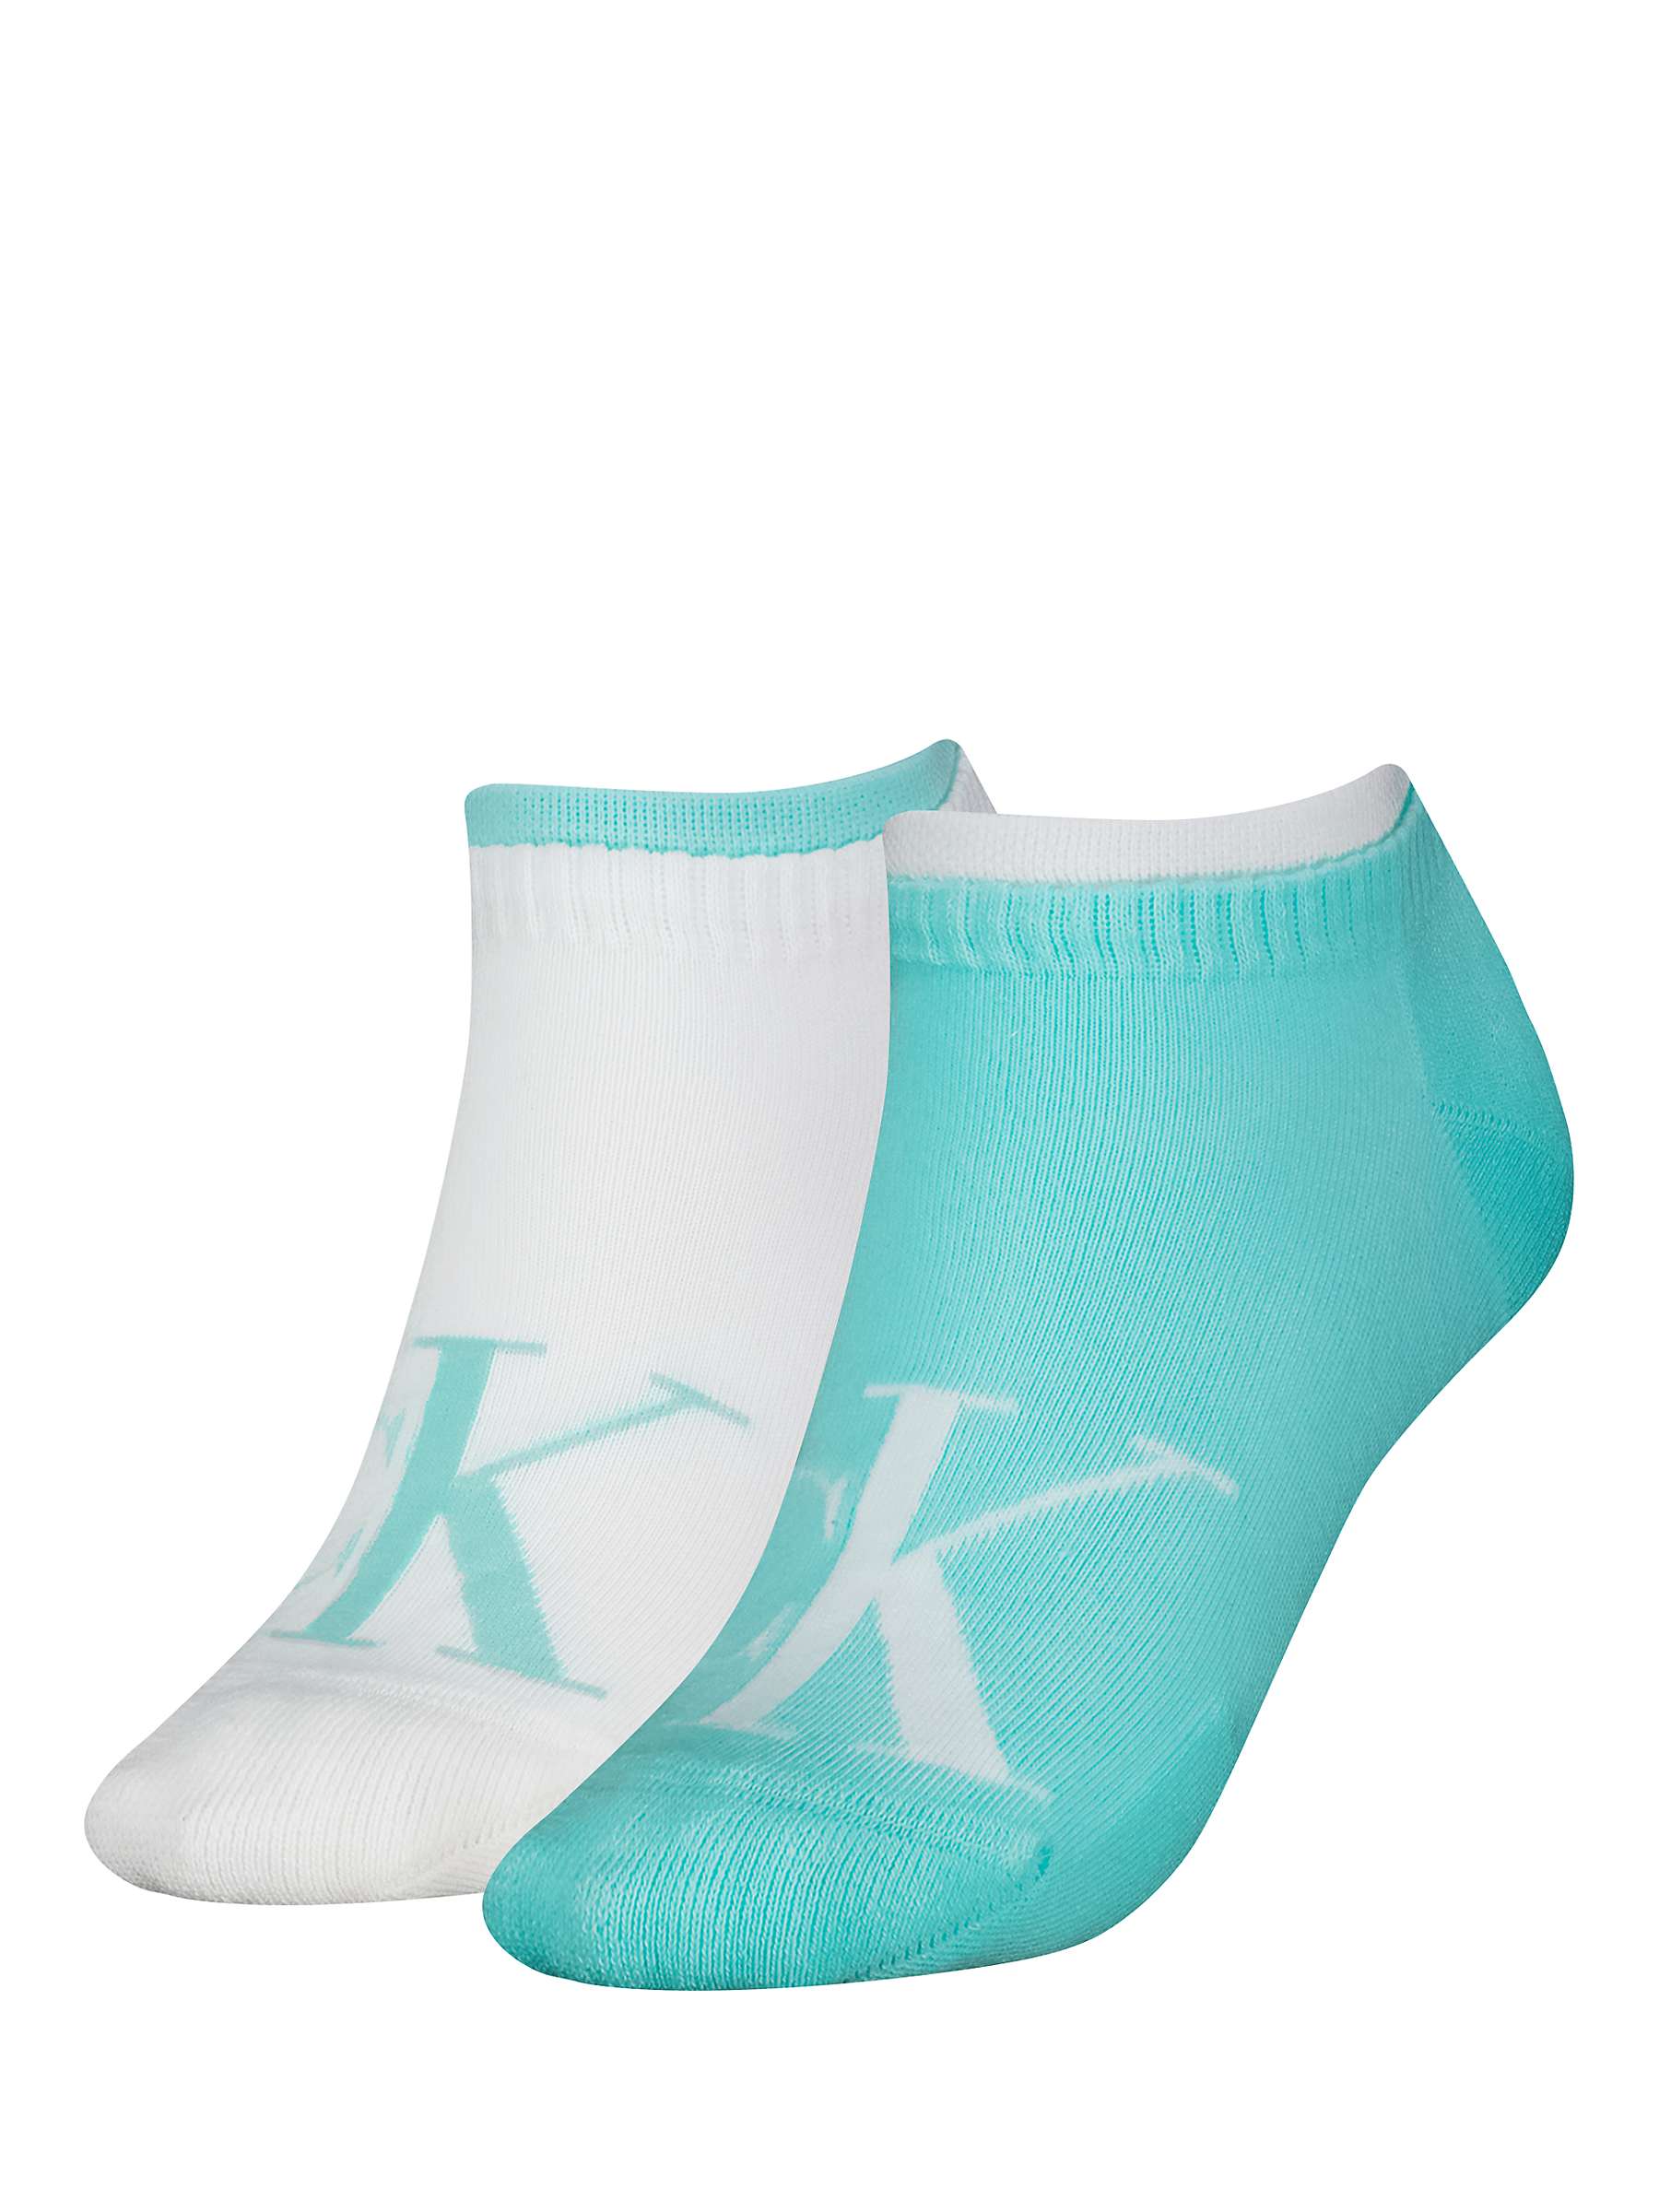 Buy Calvin Klein Logo Trainer Socks, Pack of 2, Light Turquoise/White Online at johnlewis.com